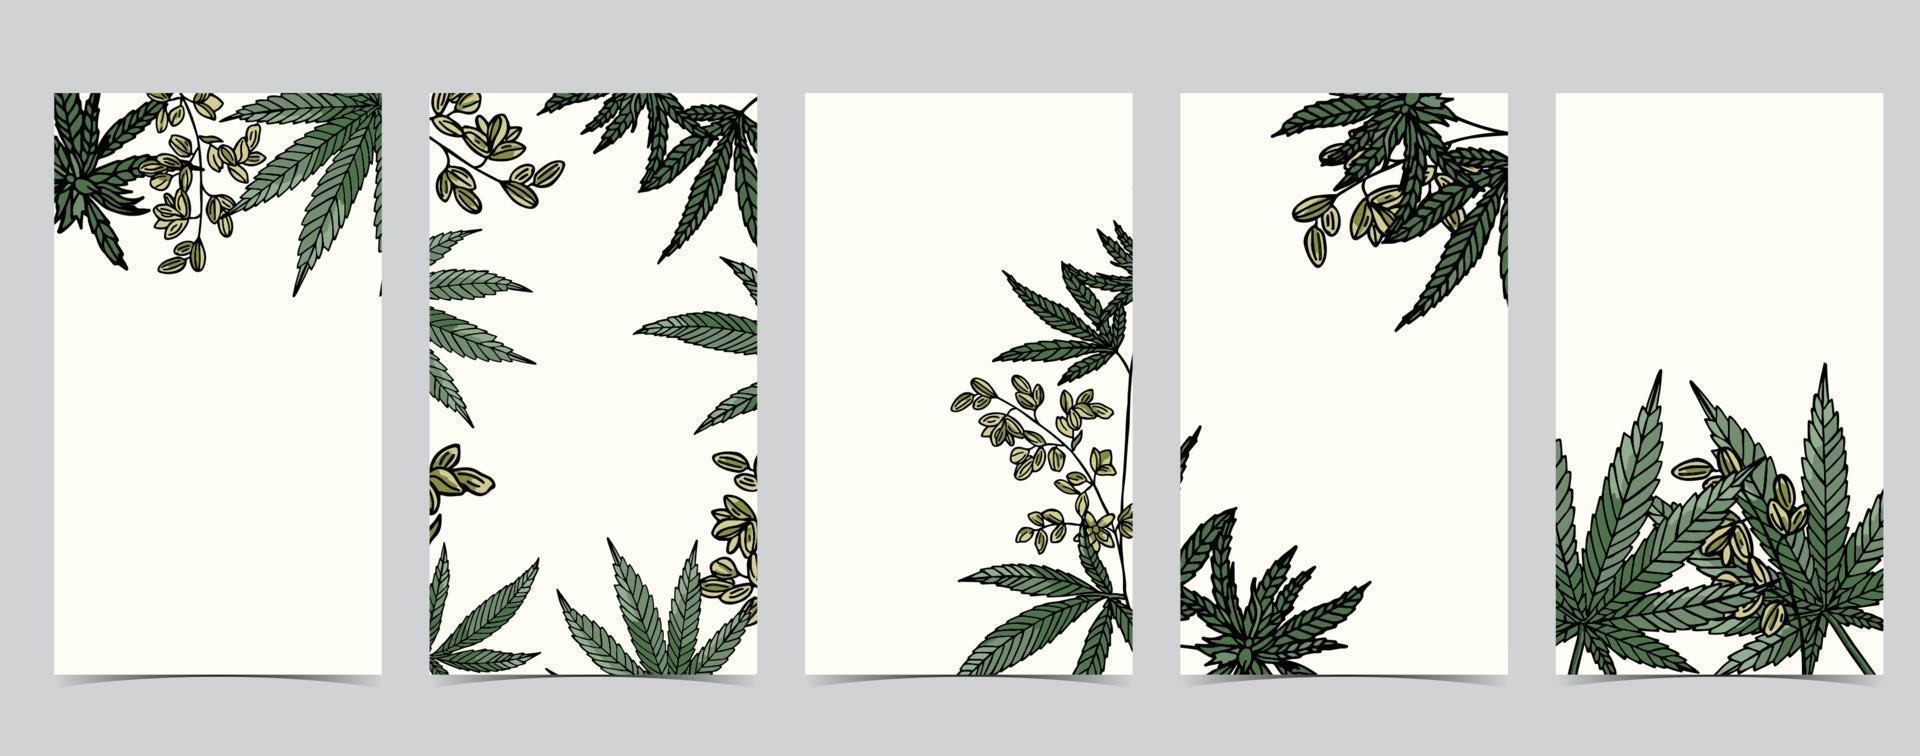 samling av cannabis bakgrund set med green.editable vektorillustration för sociala medier vektor